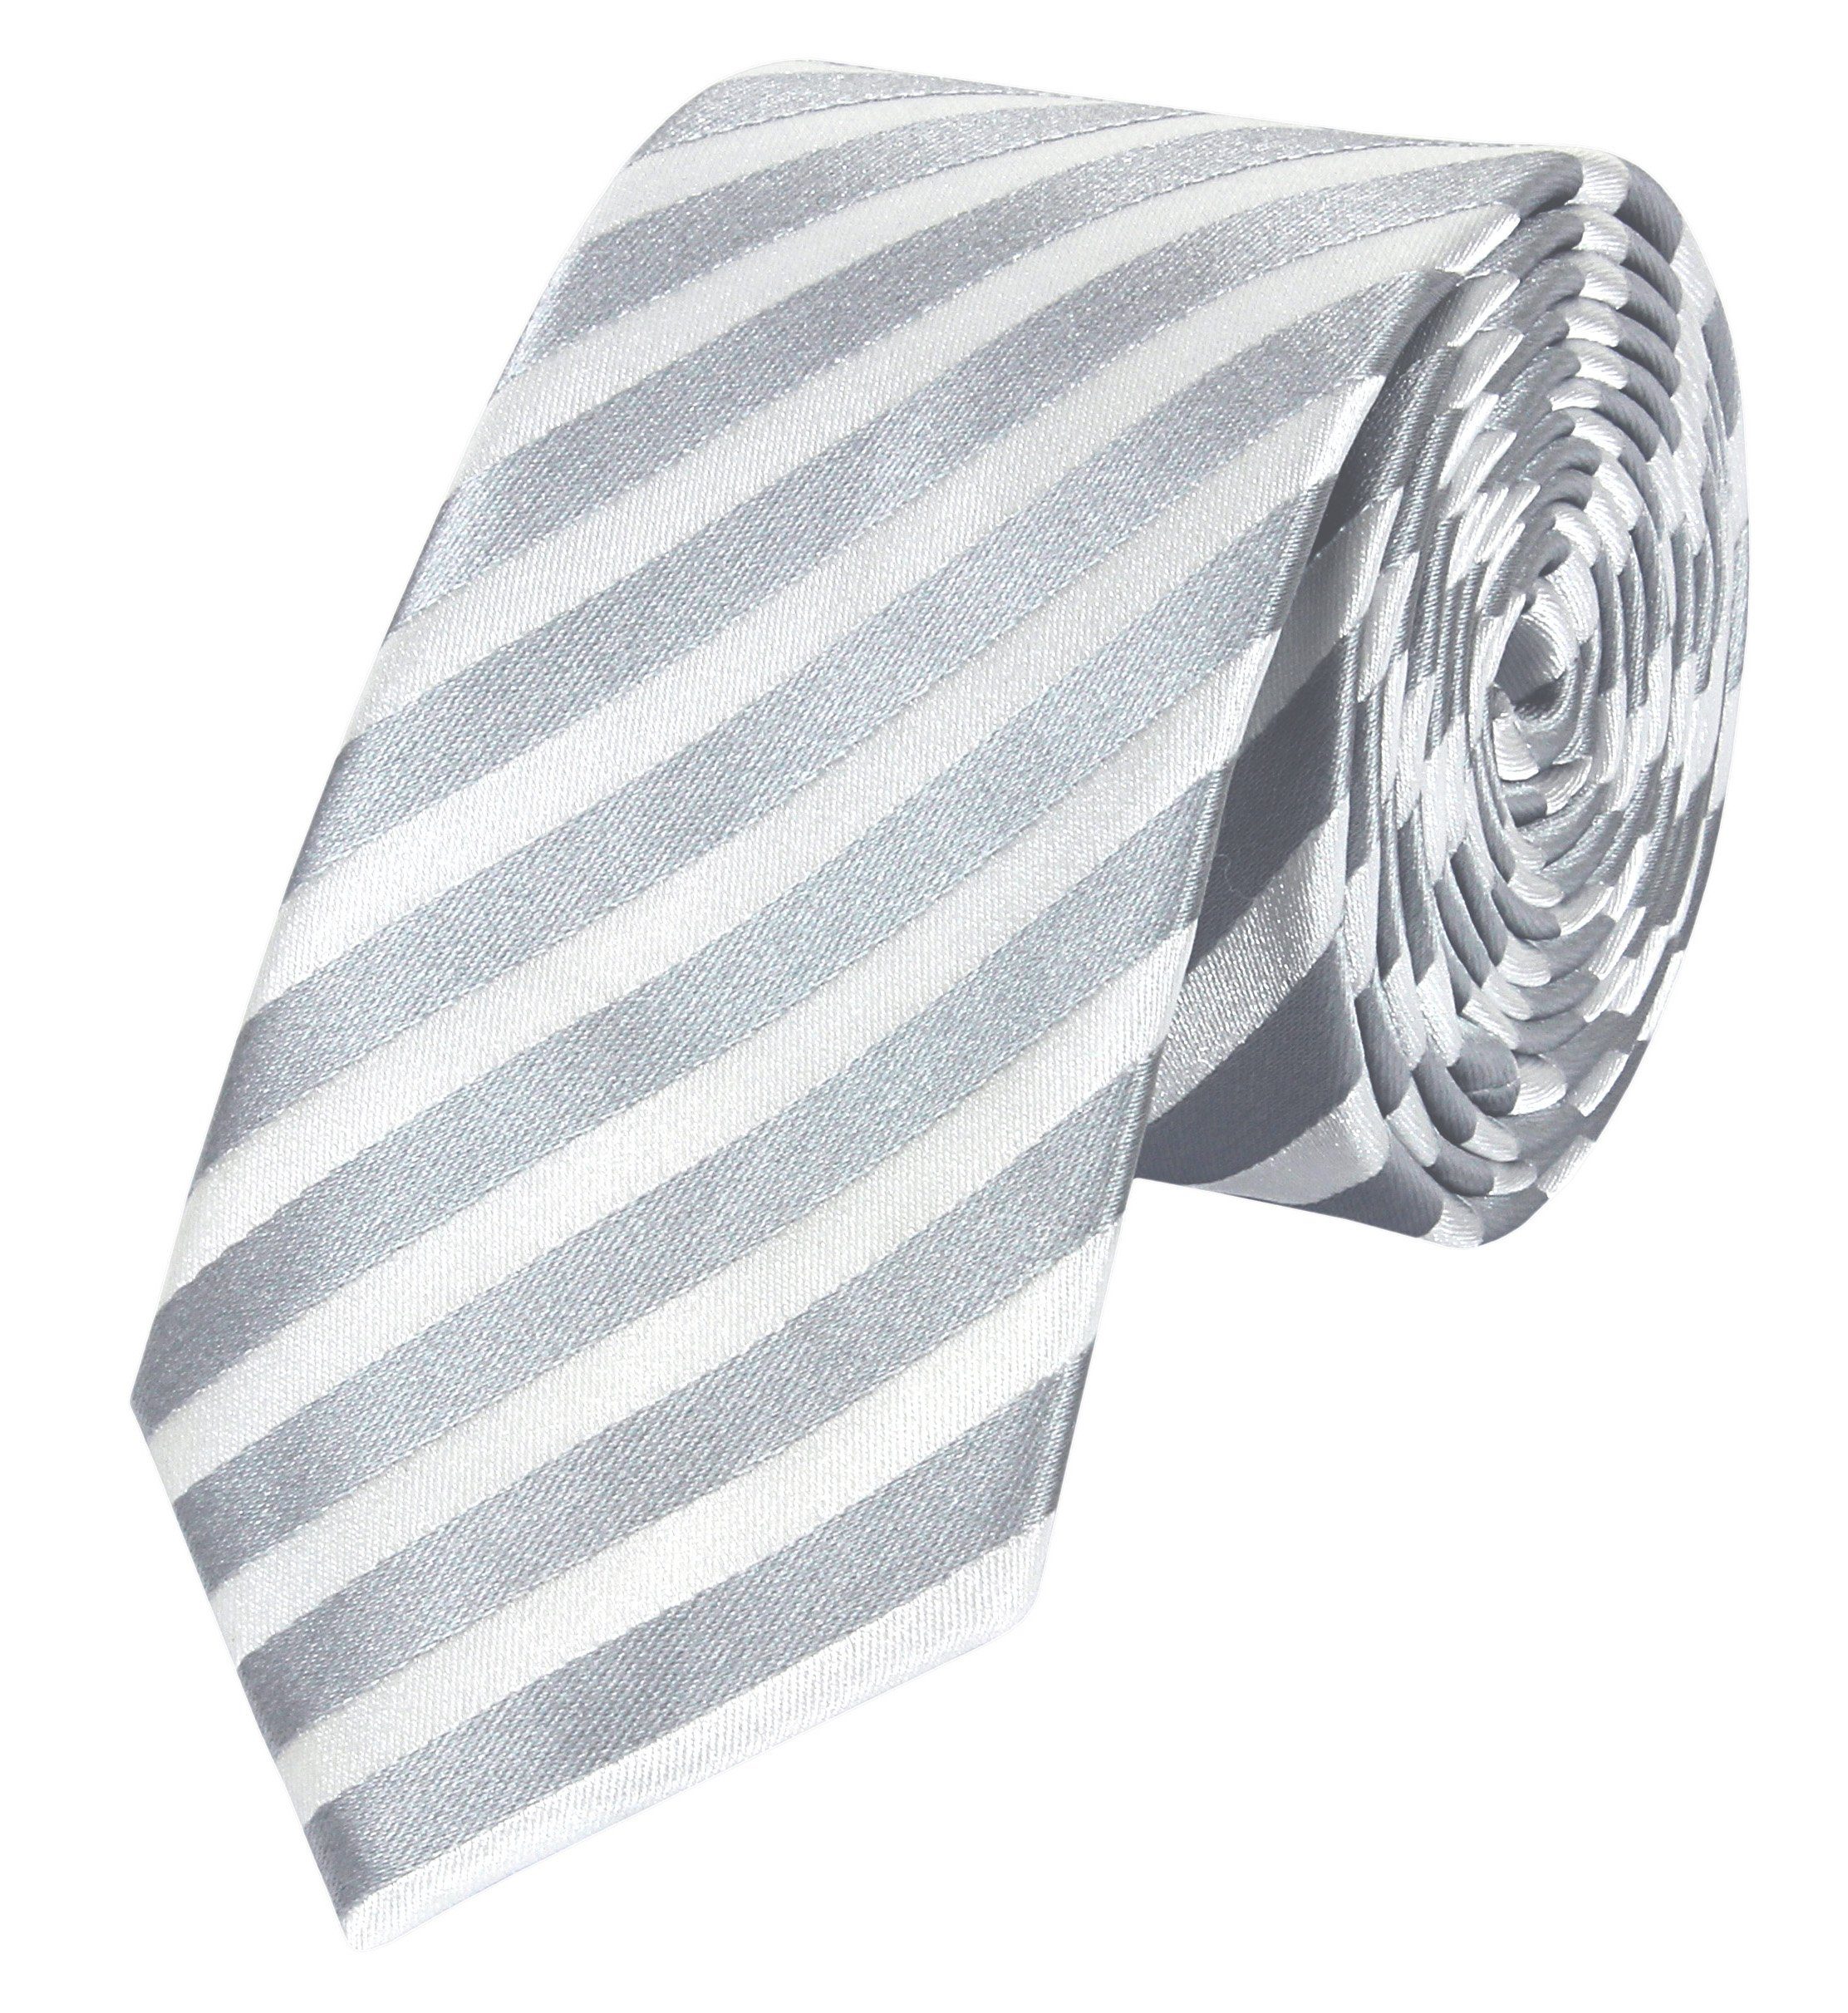 Fabio Farini Krawatte Herren Krawatten Grau - klassische Männer Schlipse in 6cm Breite (ohne Box, Gestreift) Schmal (6cm), Silber Weiß - Grau/Weiß